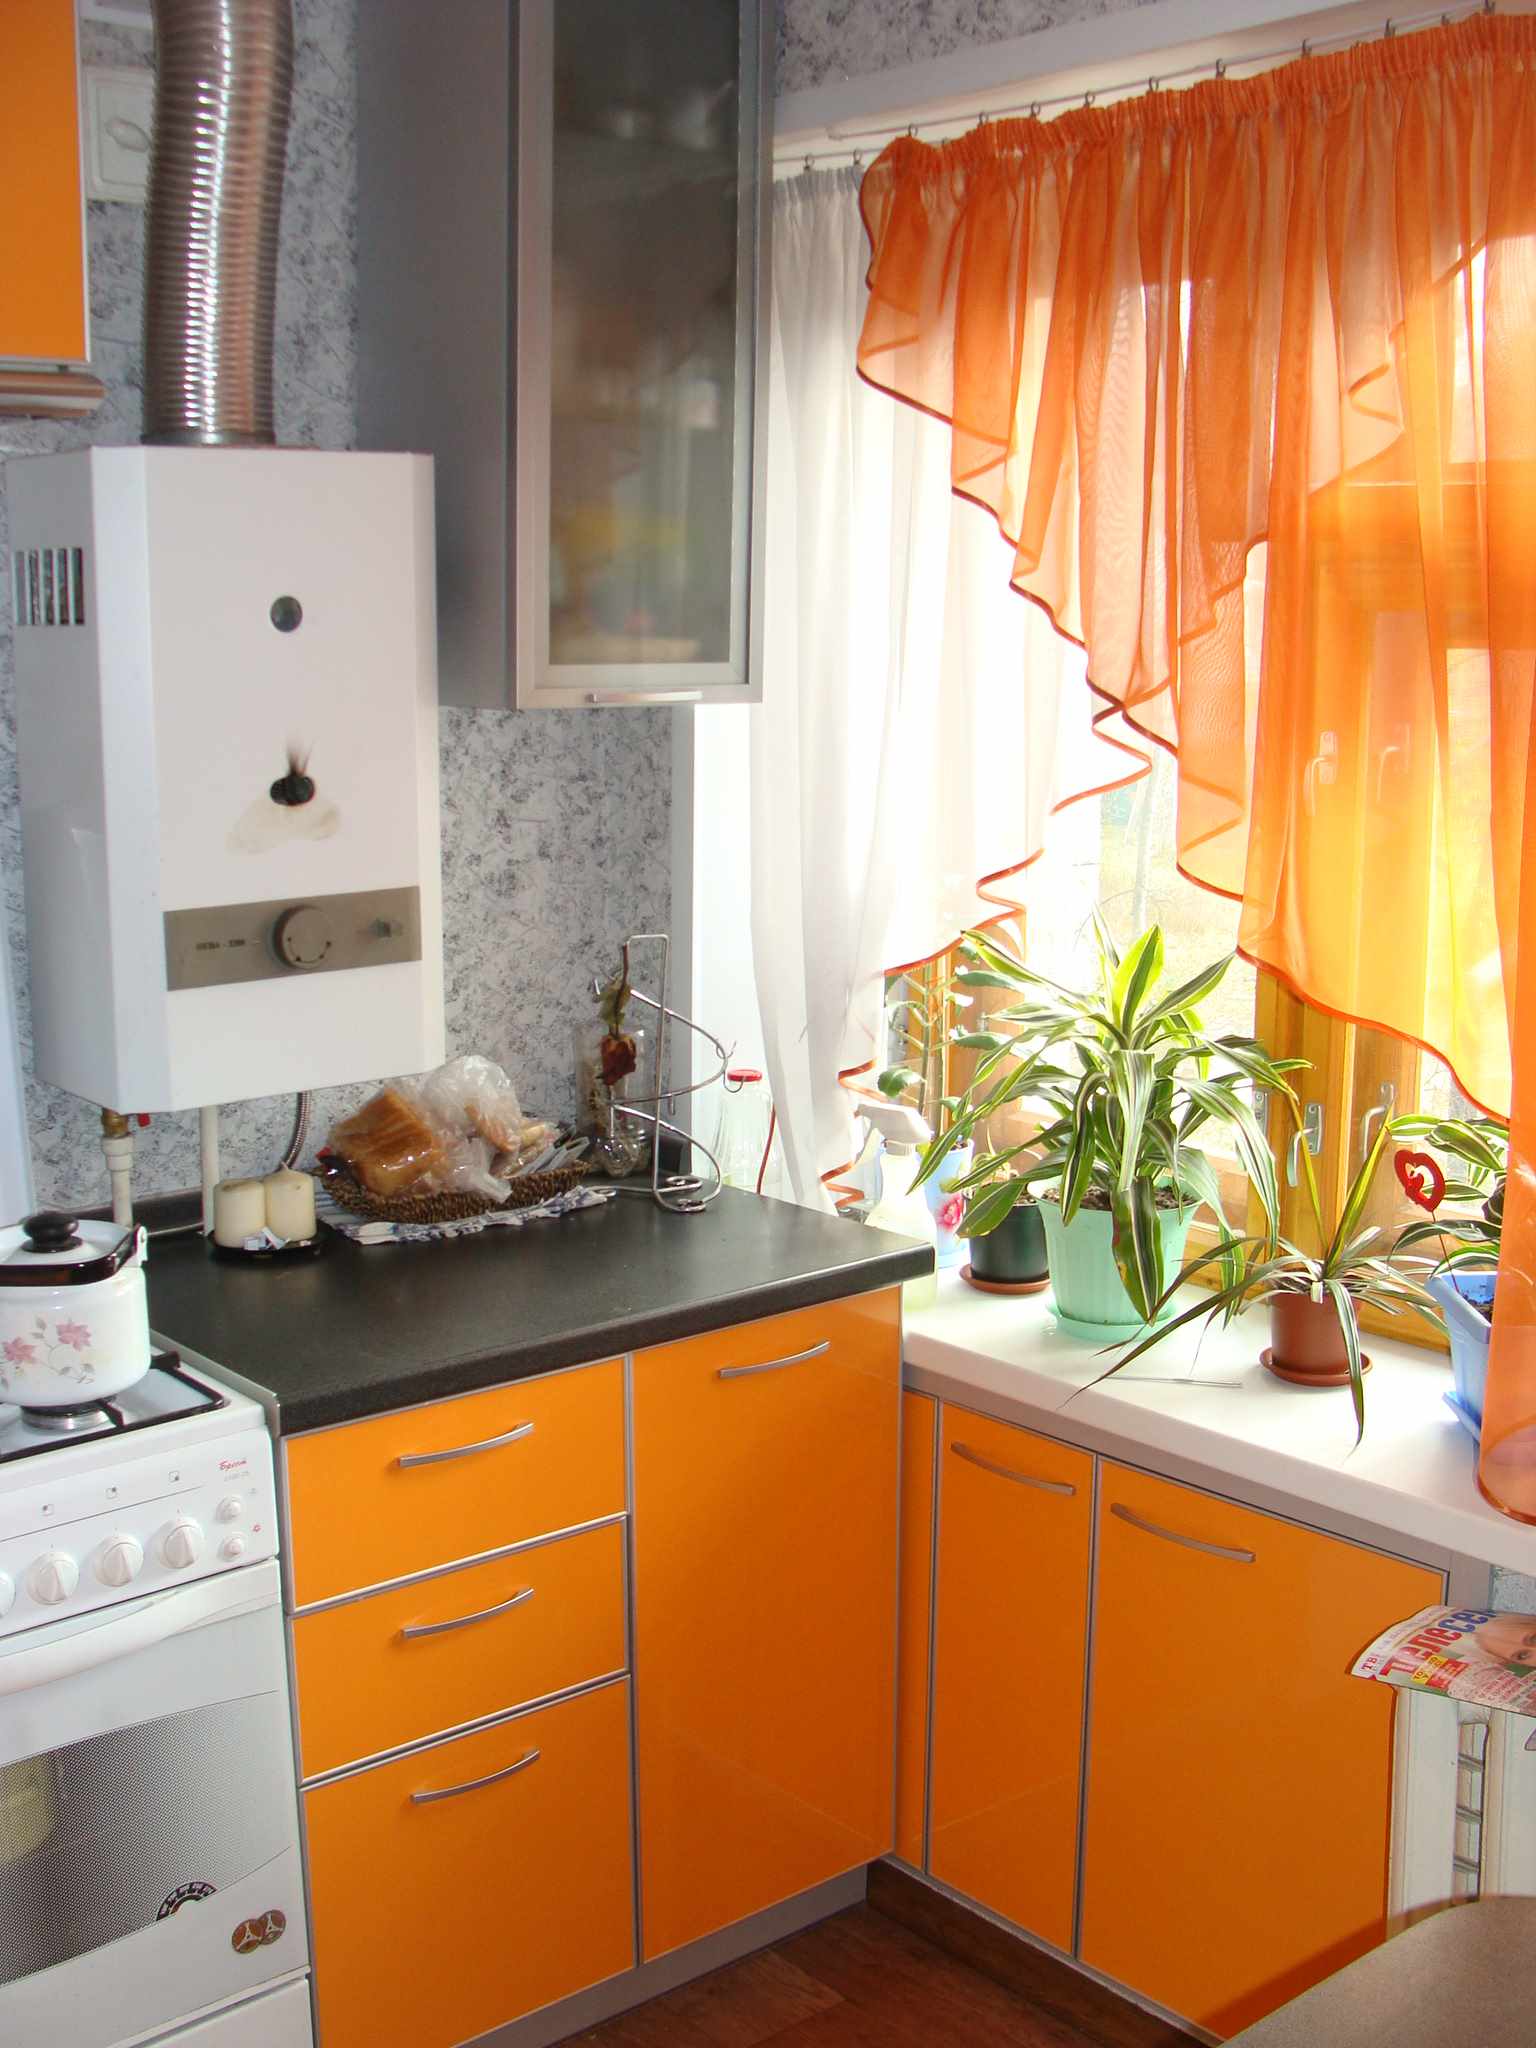 Príklad krásneho interiéru kuchyne s plynovým kotlom